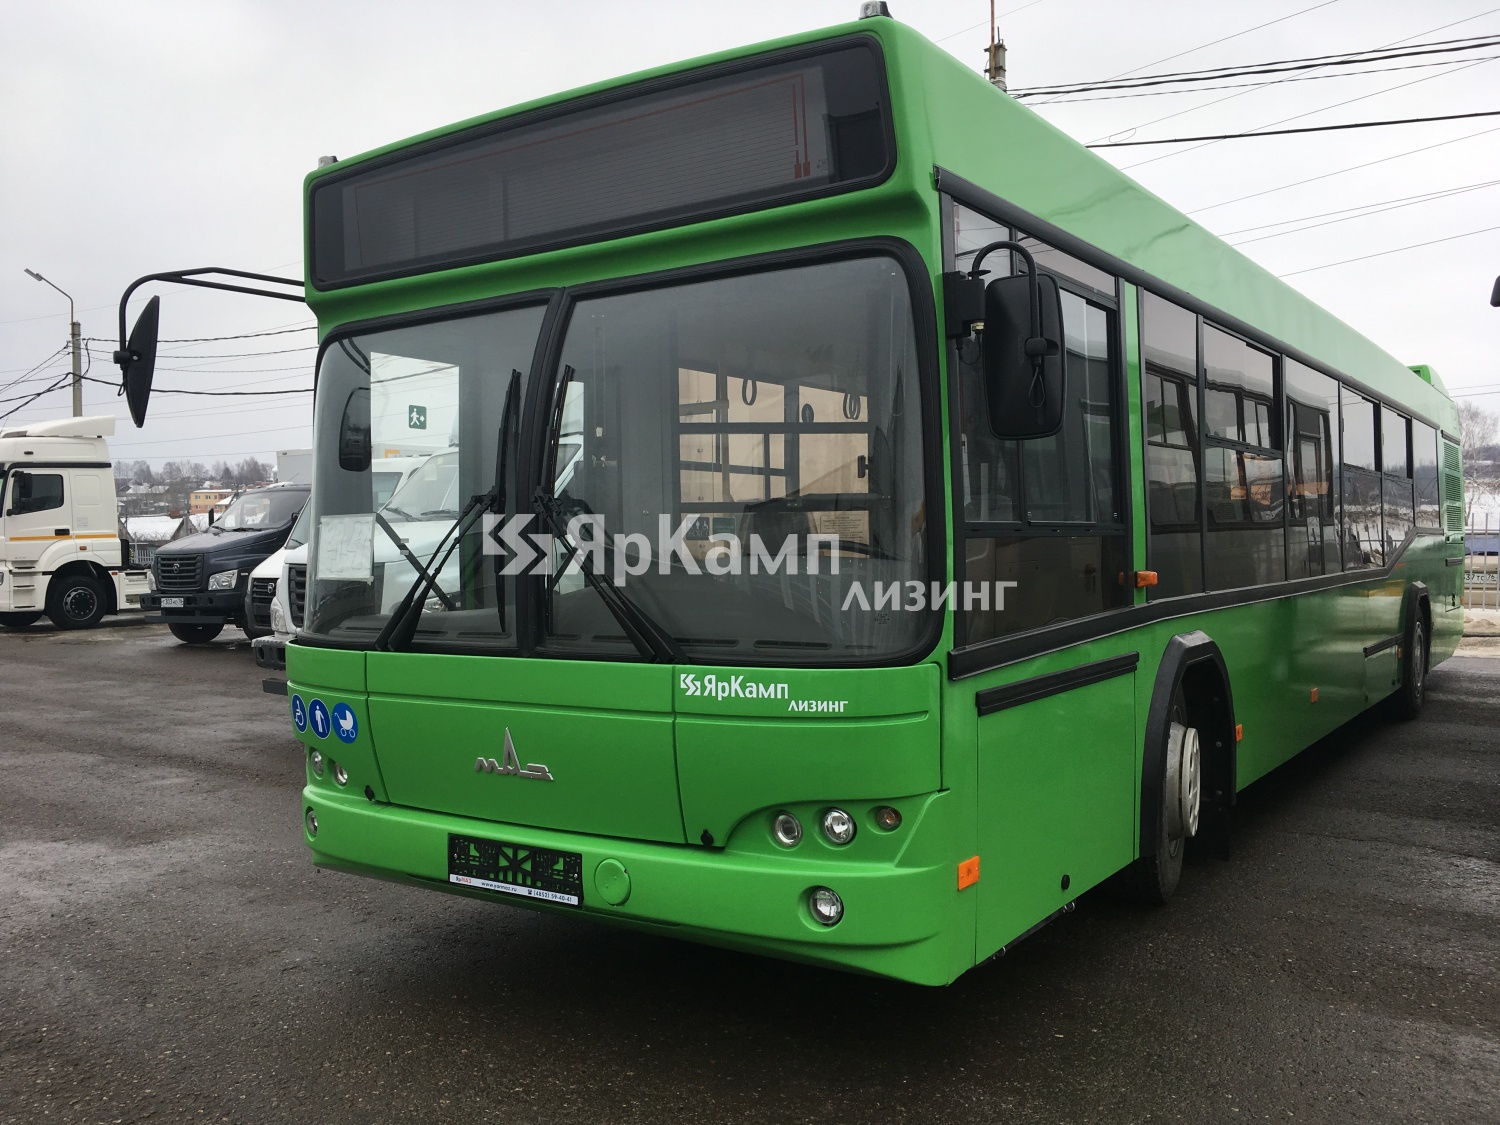 "ЯрКамп-Лизинг" поставил на правах финансовой аренды пригородный автобус МАЗ 103586